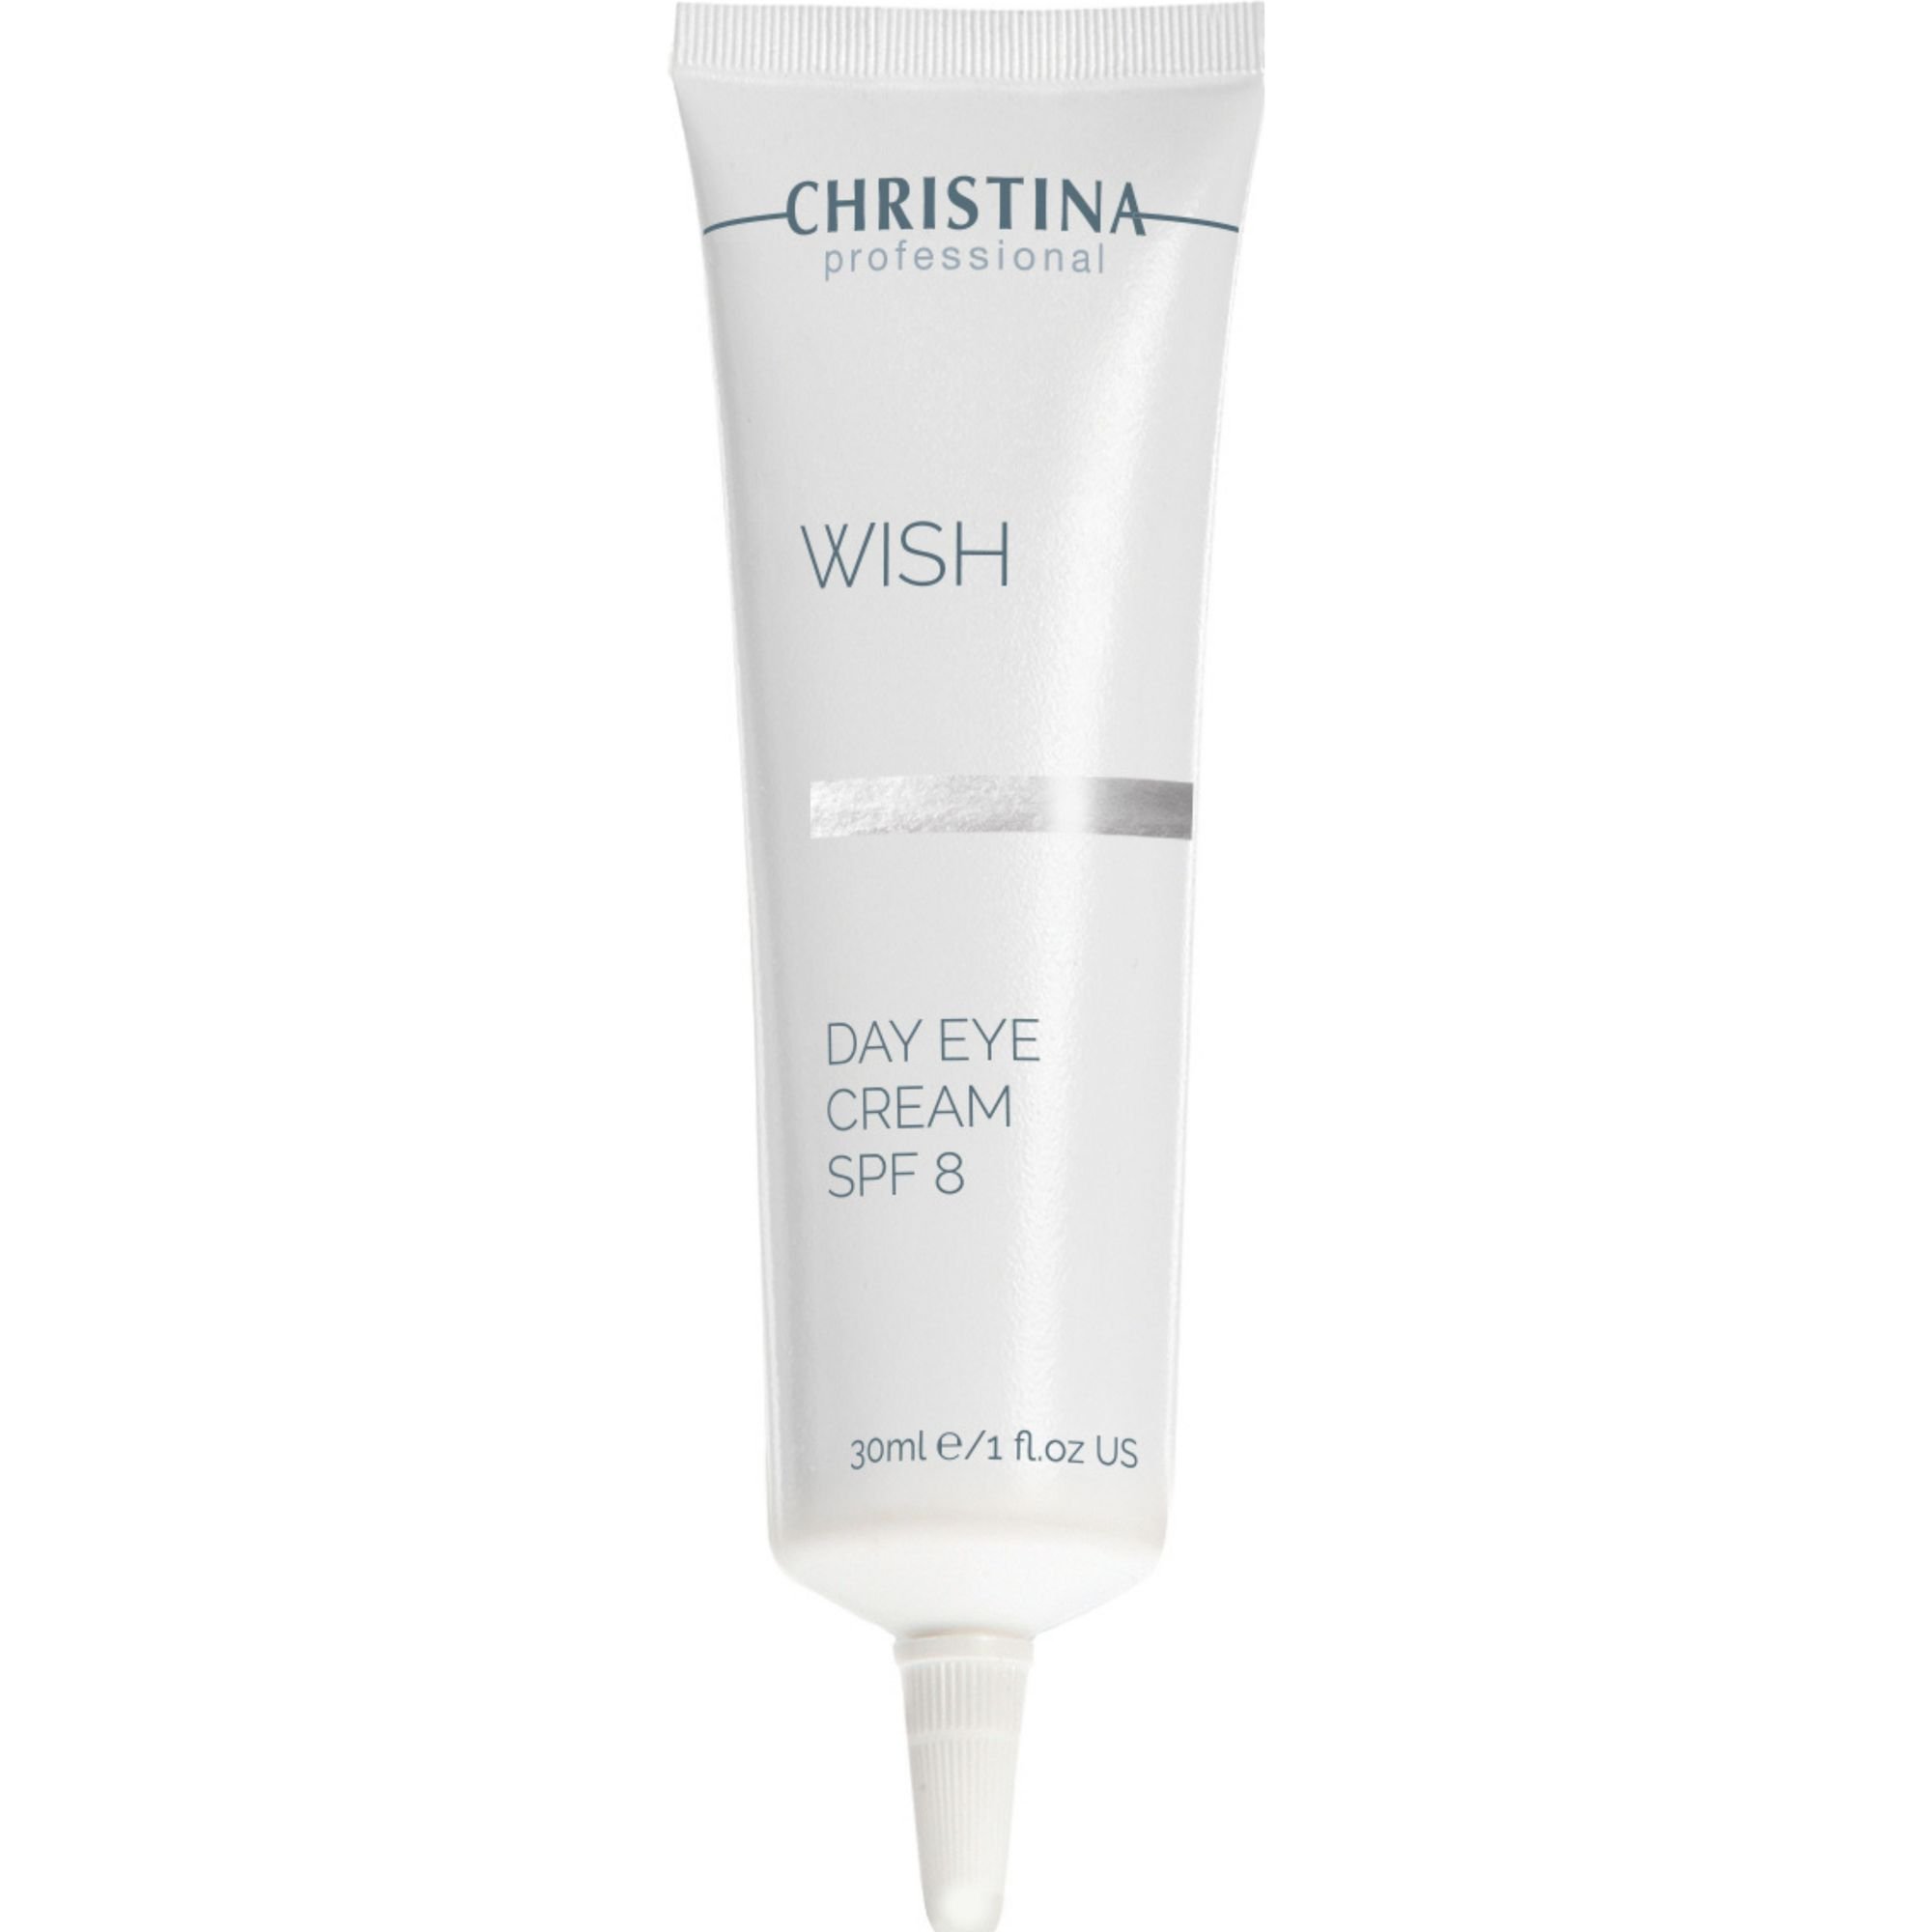 Денний крем для шкіри навколо очей Christina Wish Day Eye Cream SPF 8 30 мл - фото 1